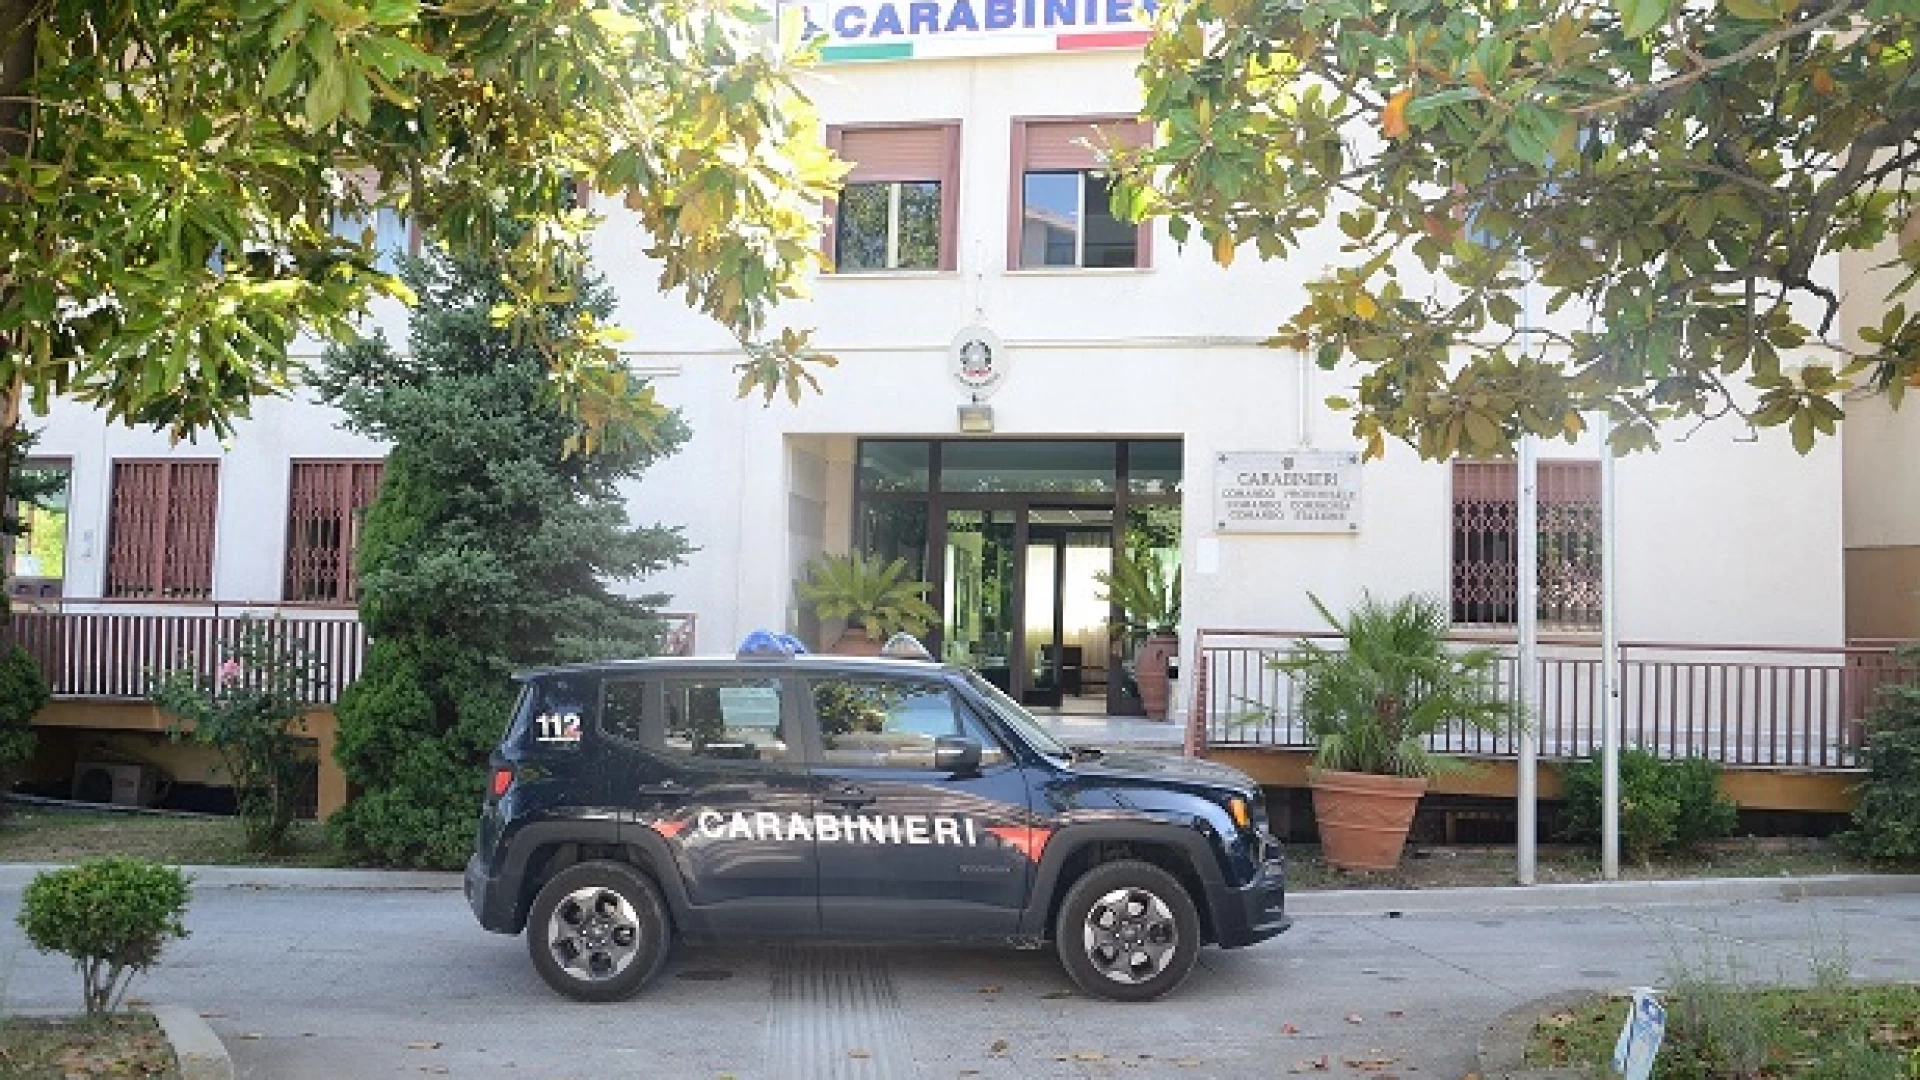 Isernia: Il Tenente Colonnello Marco Datti lascia il Comando del Reparto Operativo del Comando Provinciale Carabinieri di Isernia.